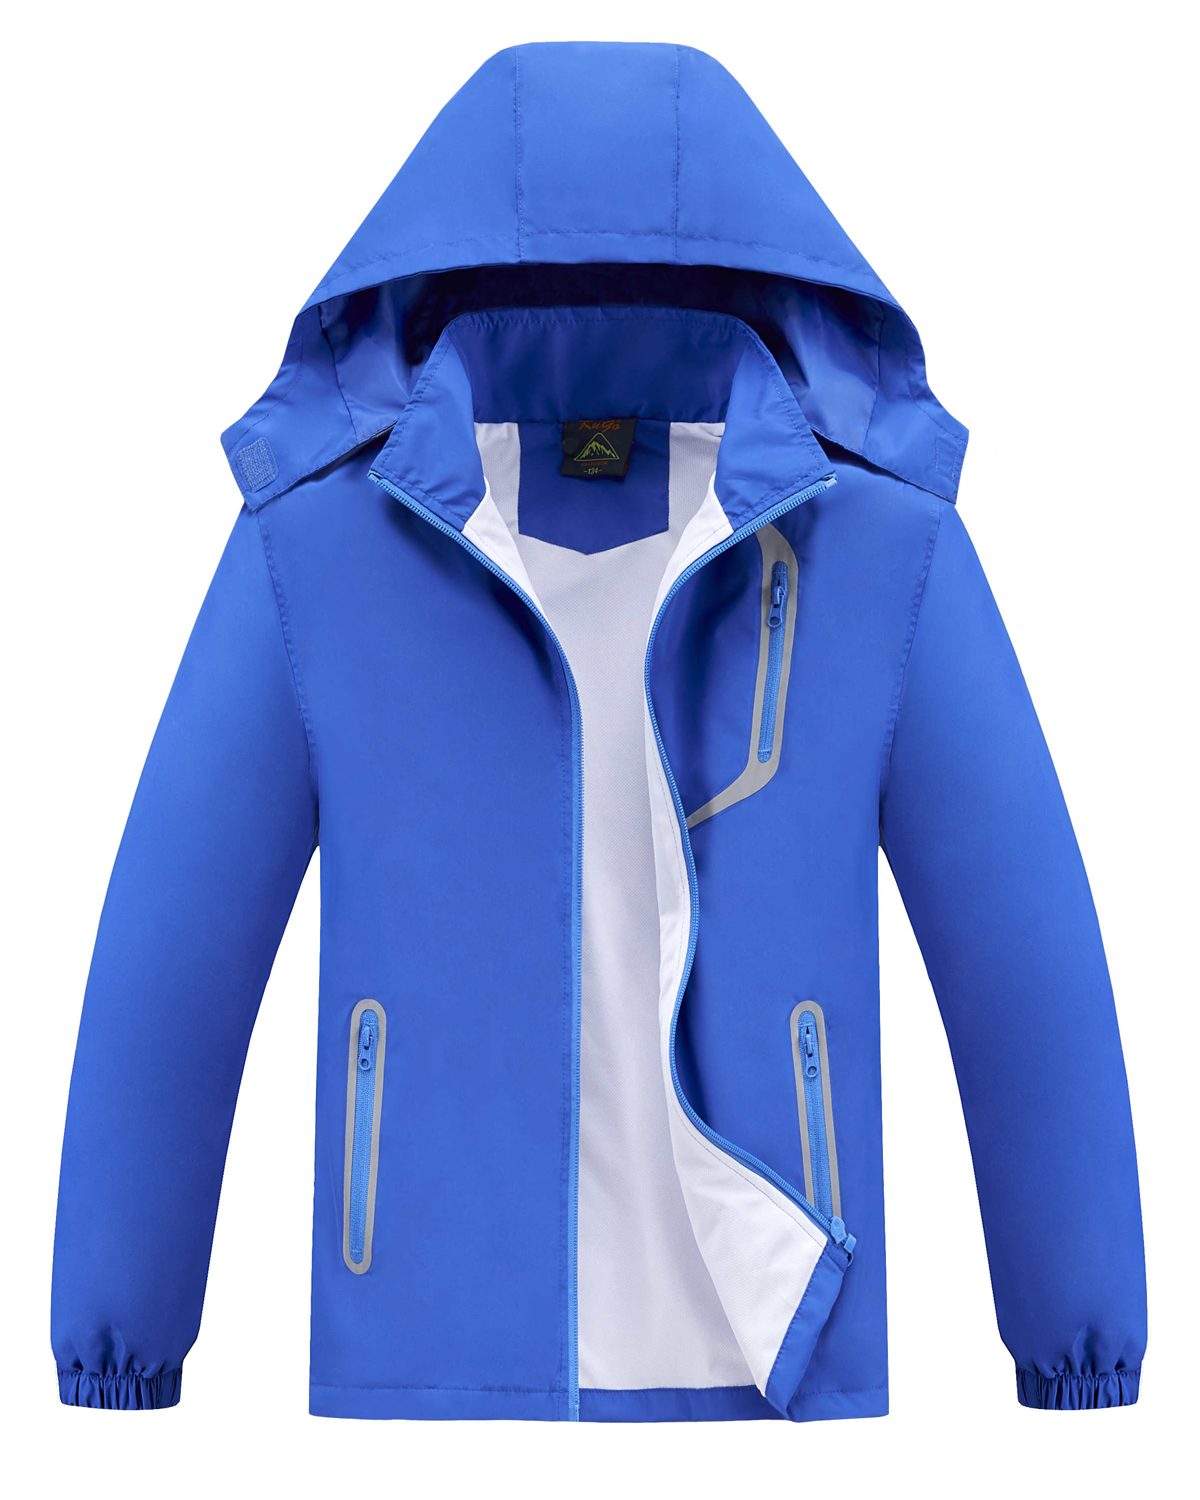 Chlapecká jarní, podzimní bunda - KUGO B2868, modrá Barva: Modrá, Velikost: 110